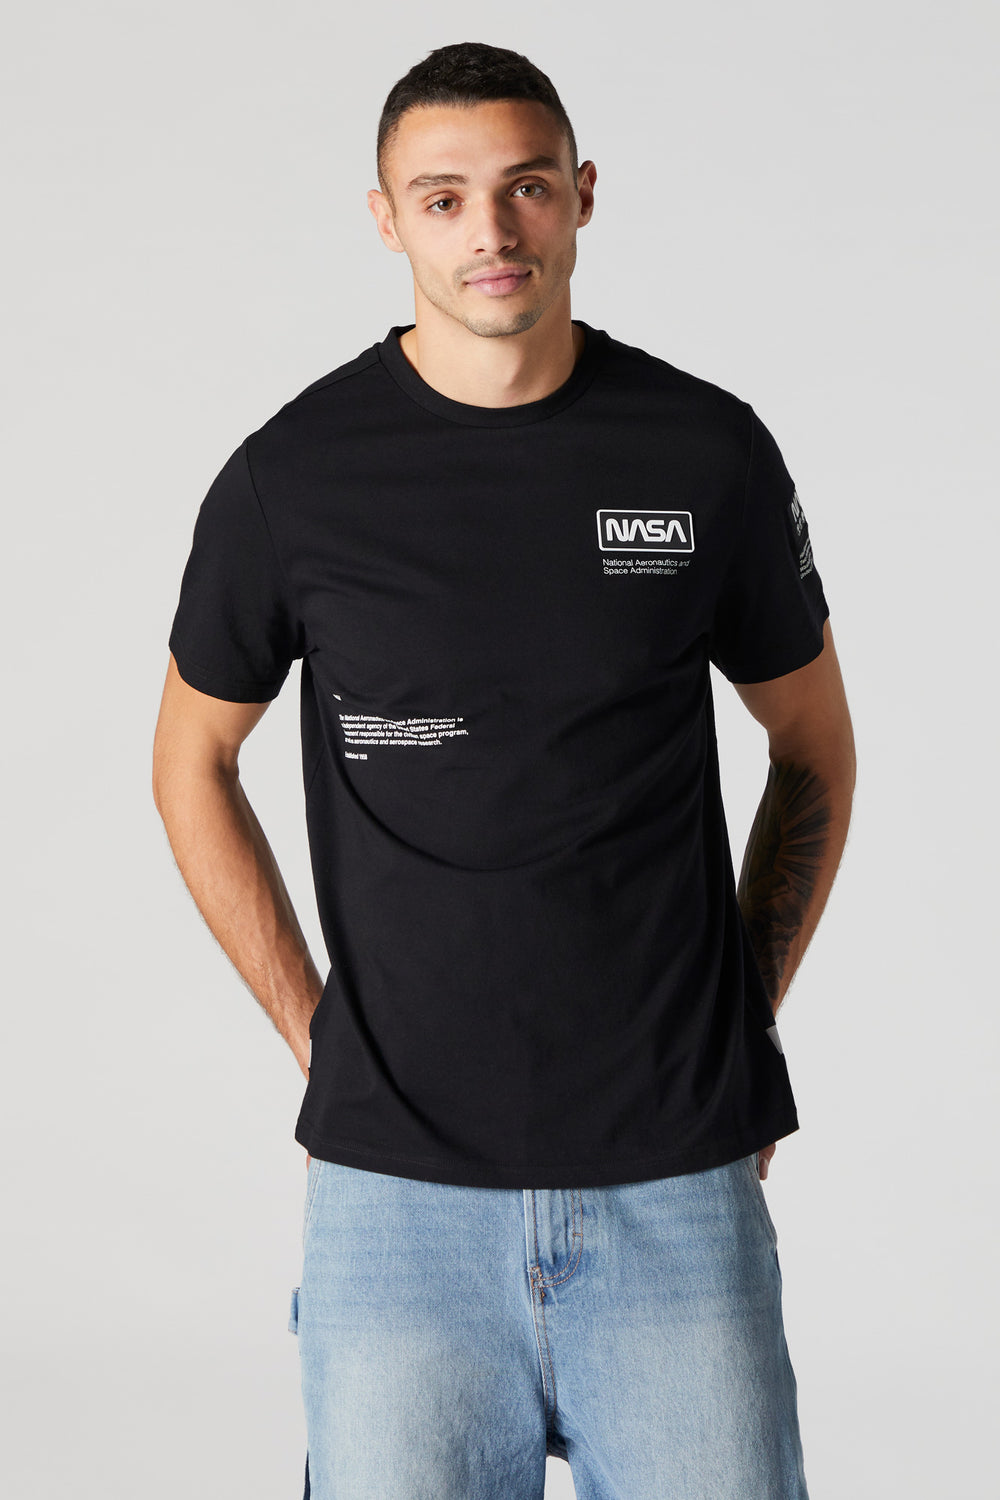 NASA Graphic T-Shirt NASA Graphic T-Shirt 1